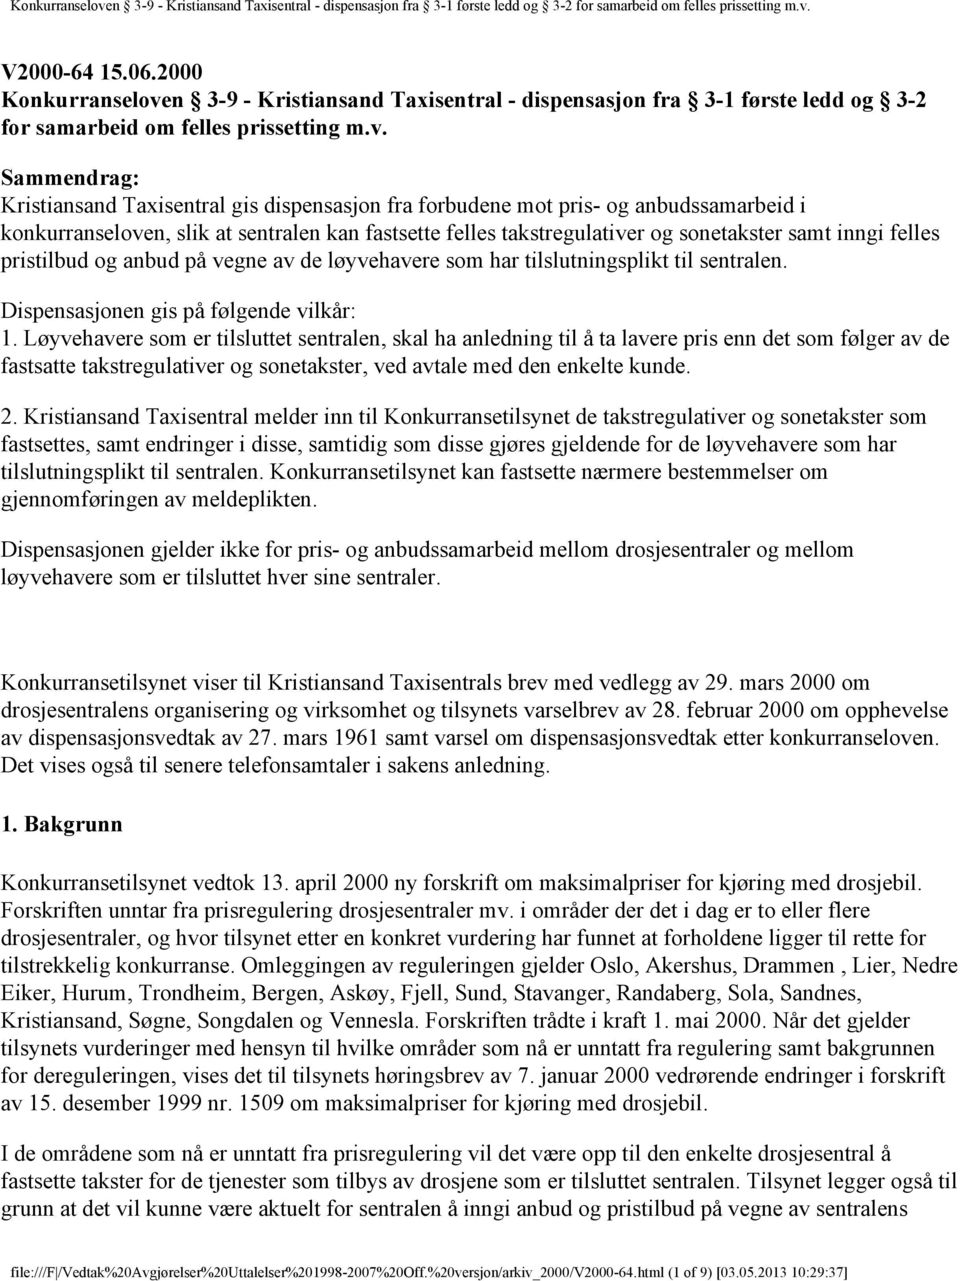 Sammendrag: Kristiansand Taxisentral gis dispensasjon fra forbudene mot pris- og anbudssamarbeid i konkurranseloven, slik at sentralen kan fastsette felles takstregulativer og sonetakster samt inngi